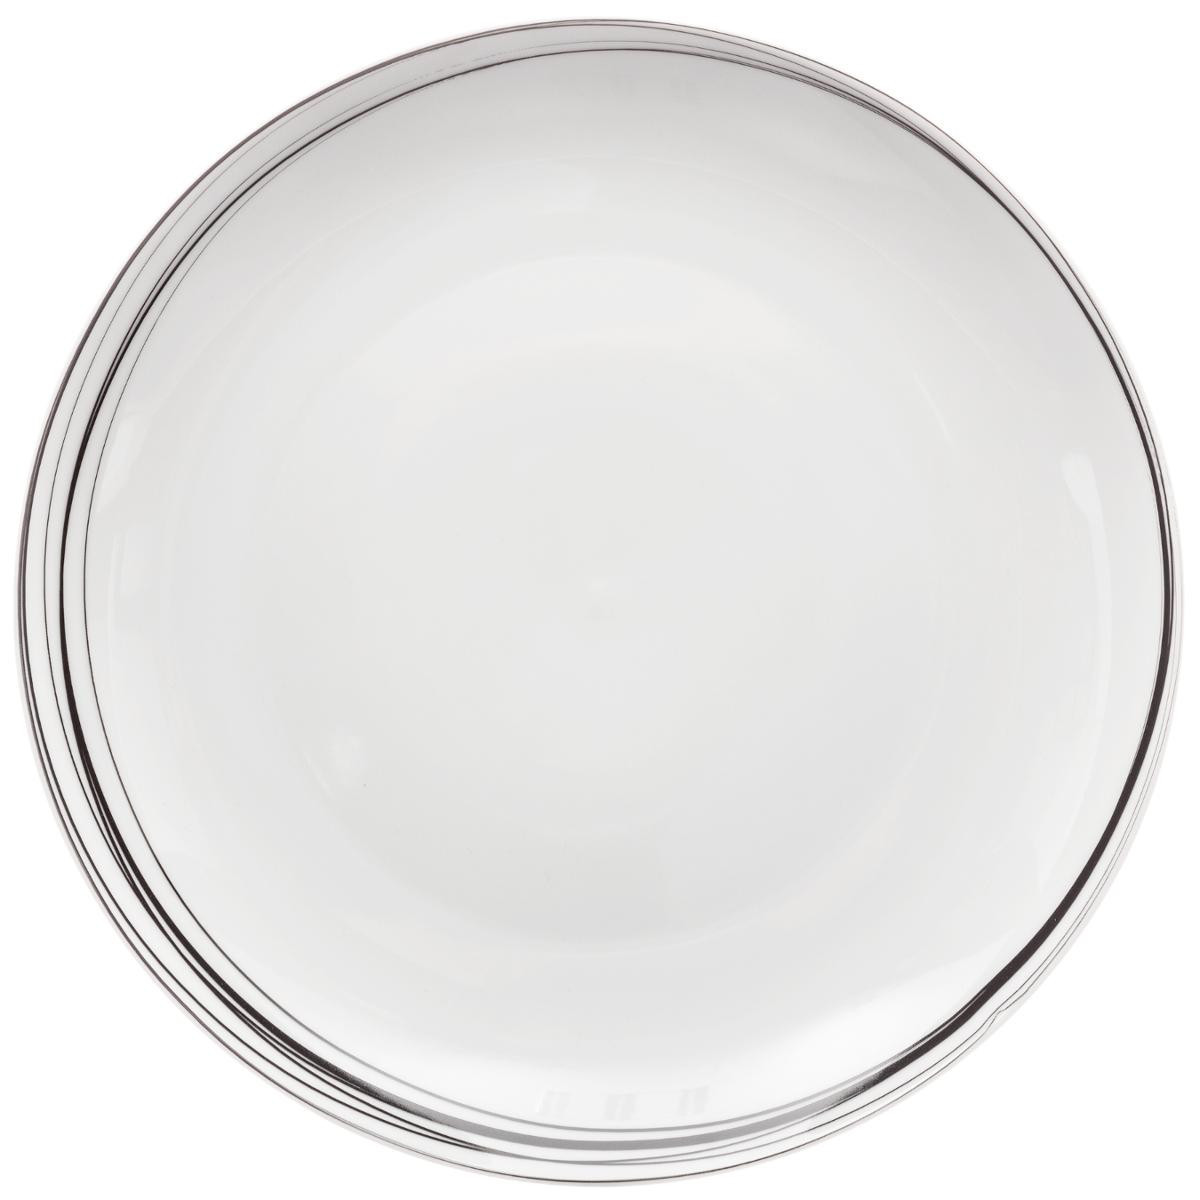 Assiette plate boréalis gris 27 cm (lot de 6)